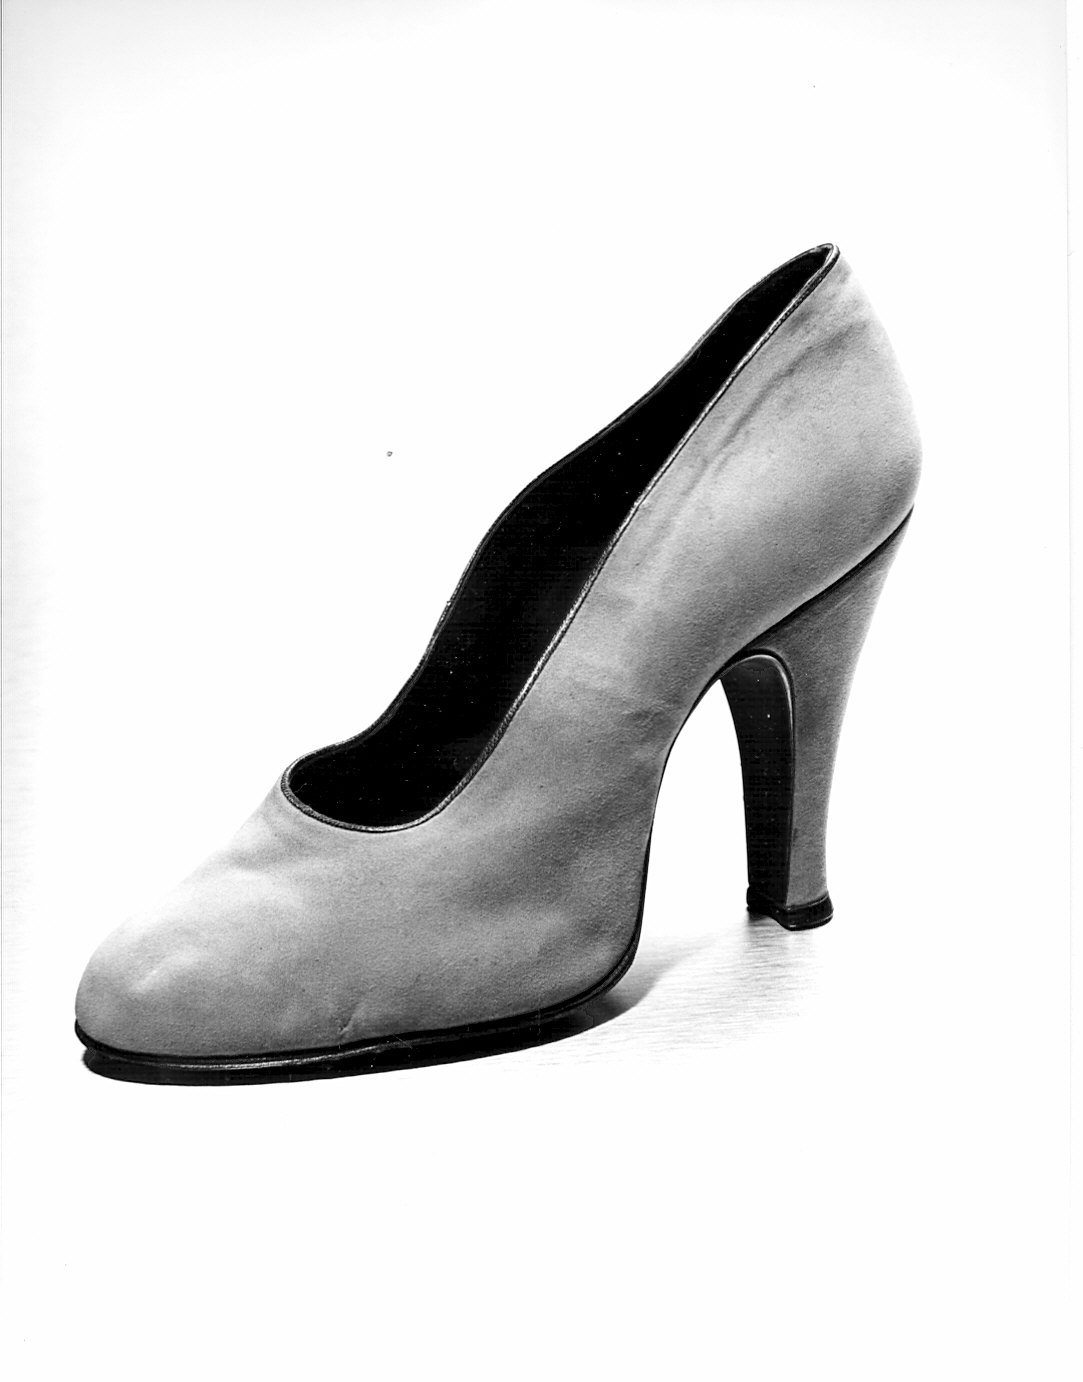 Non rilevato (scarpa) - produzione (1940)